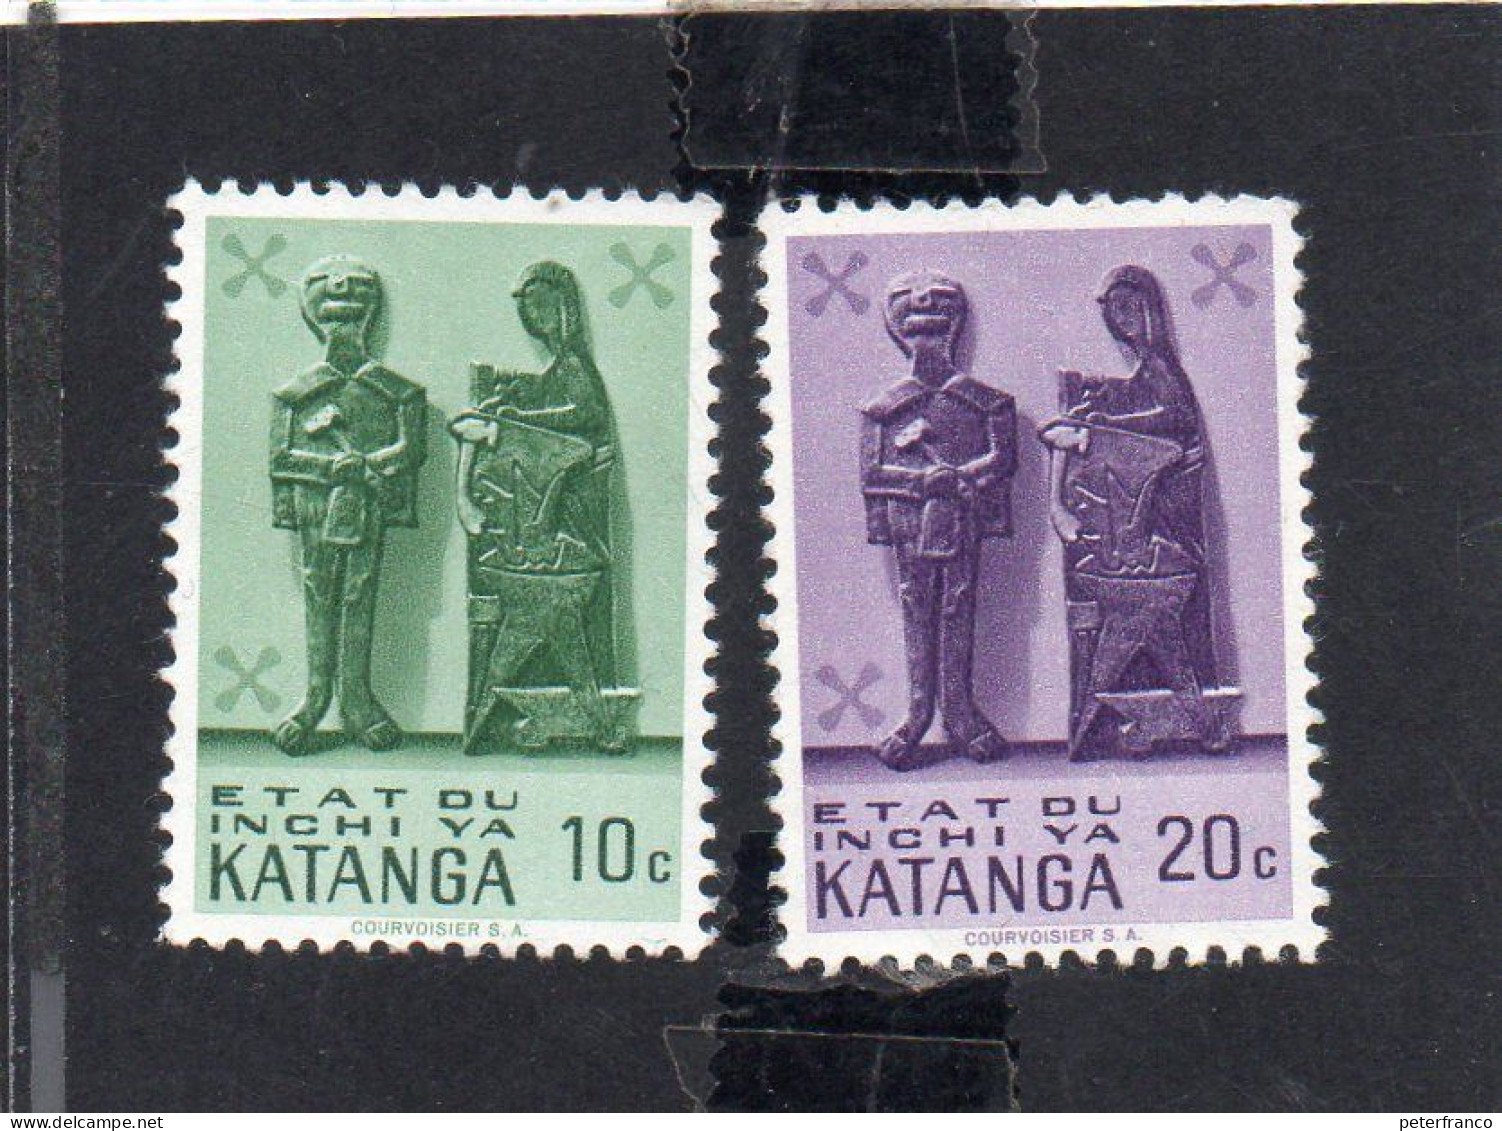 1962 Katanga - Sculture Lignee - Katanga